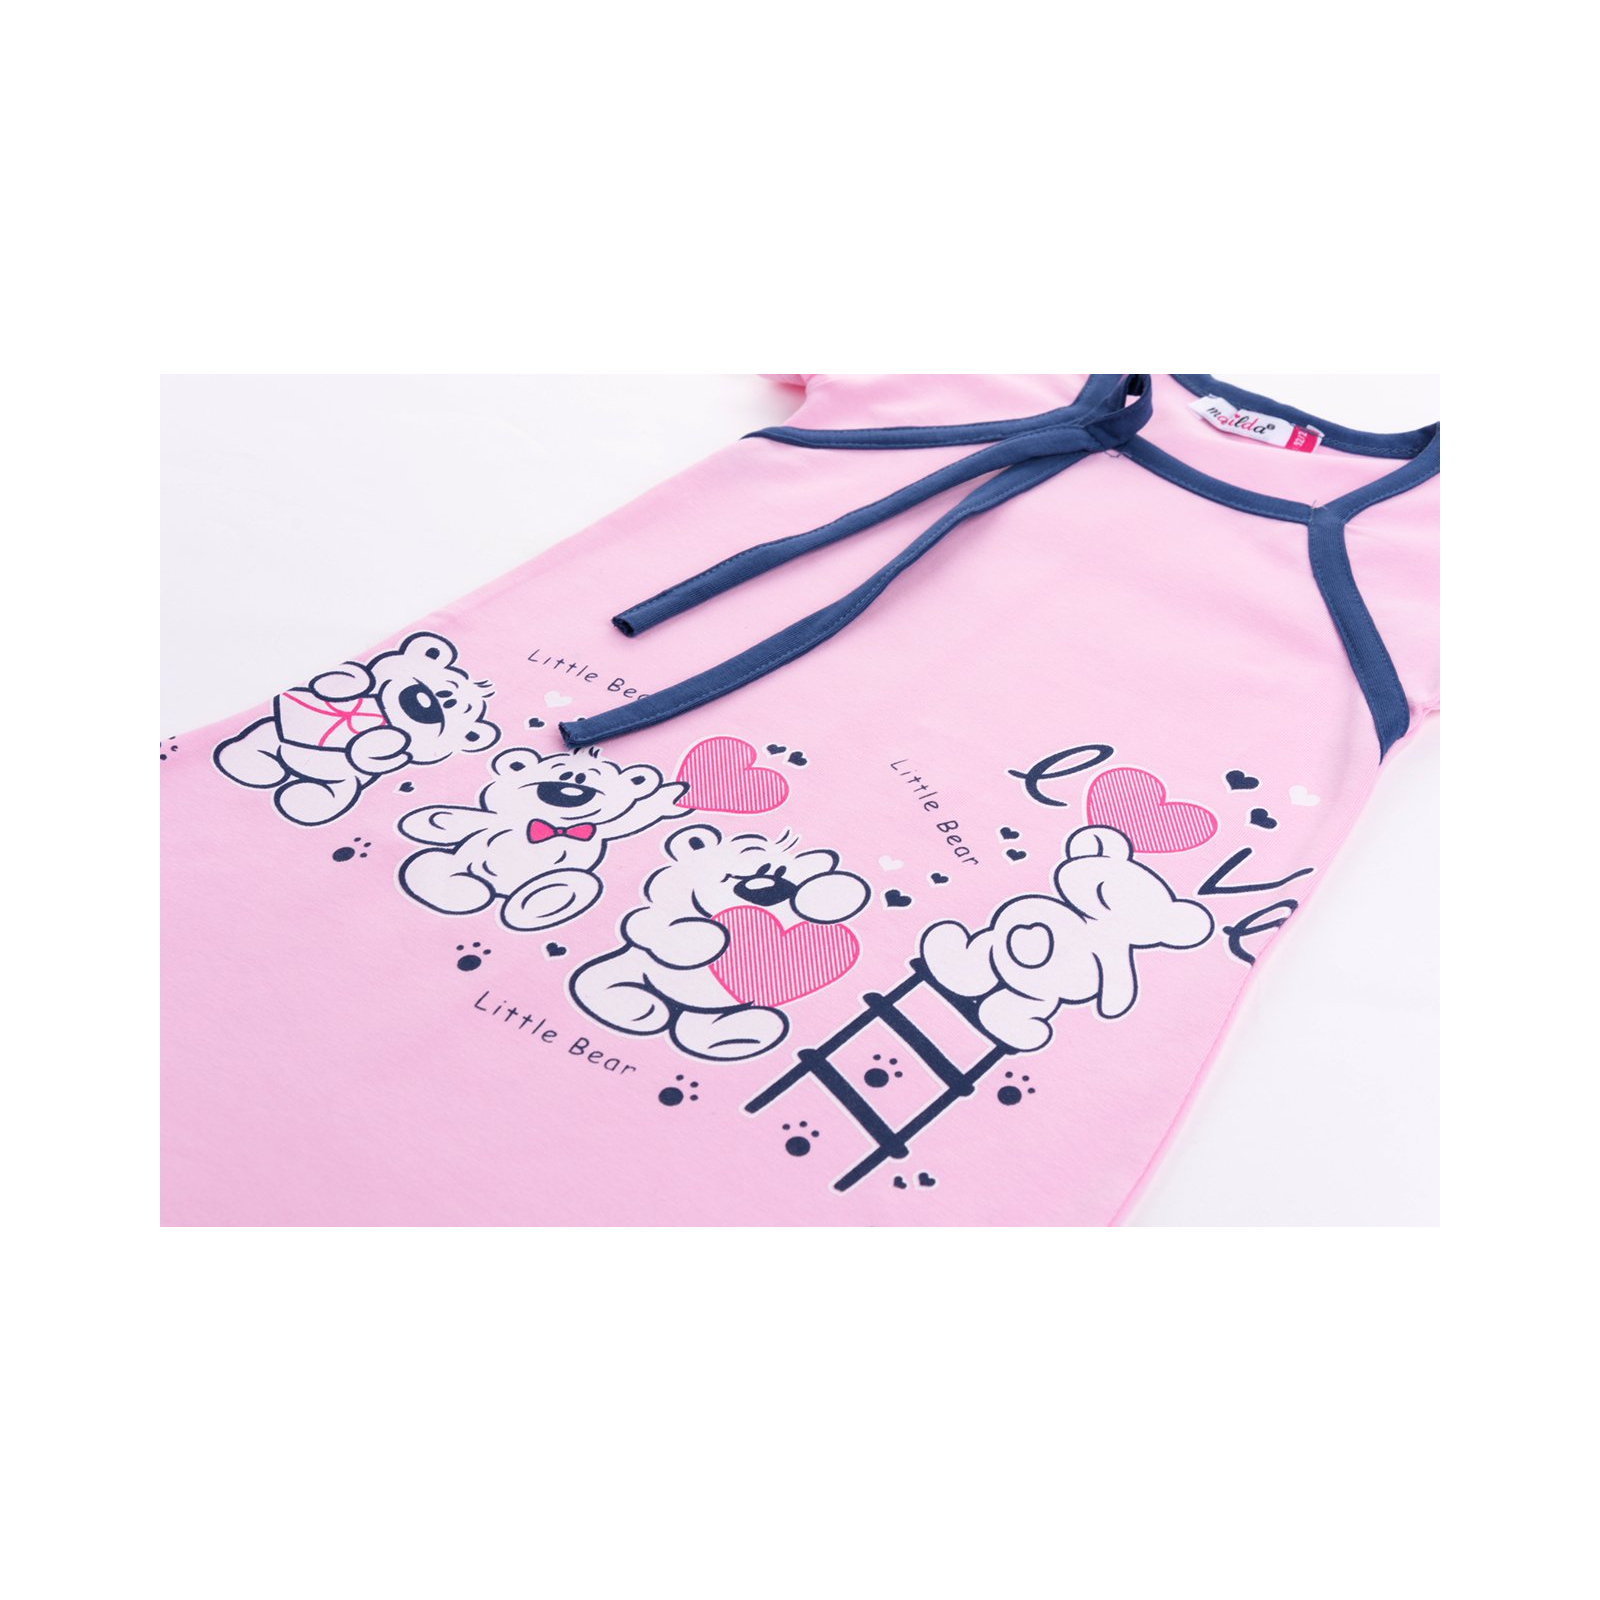 Пижама Matilda и халат с мишками "Love" (7445-164G-pink) изображение 8